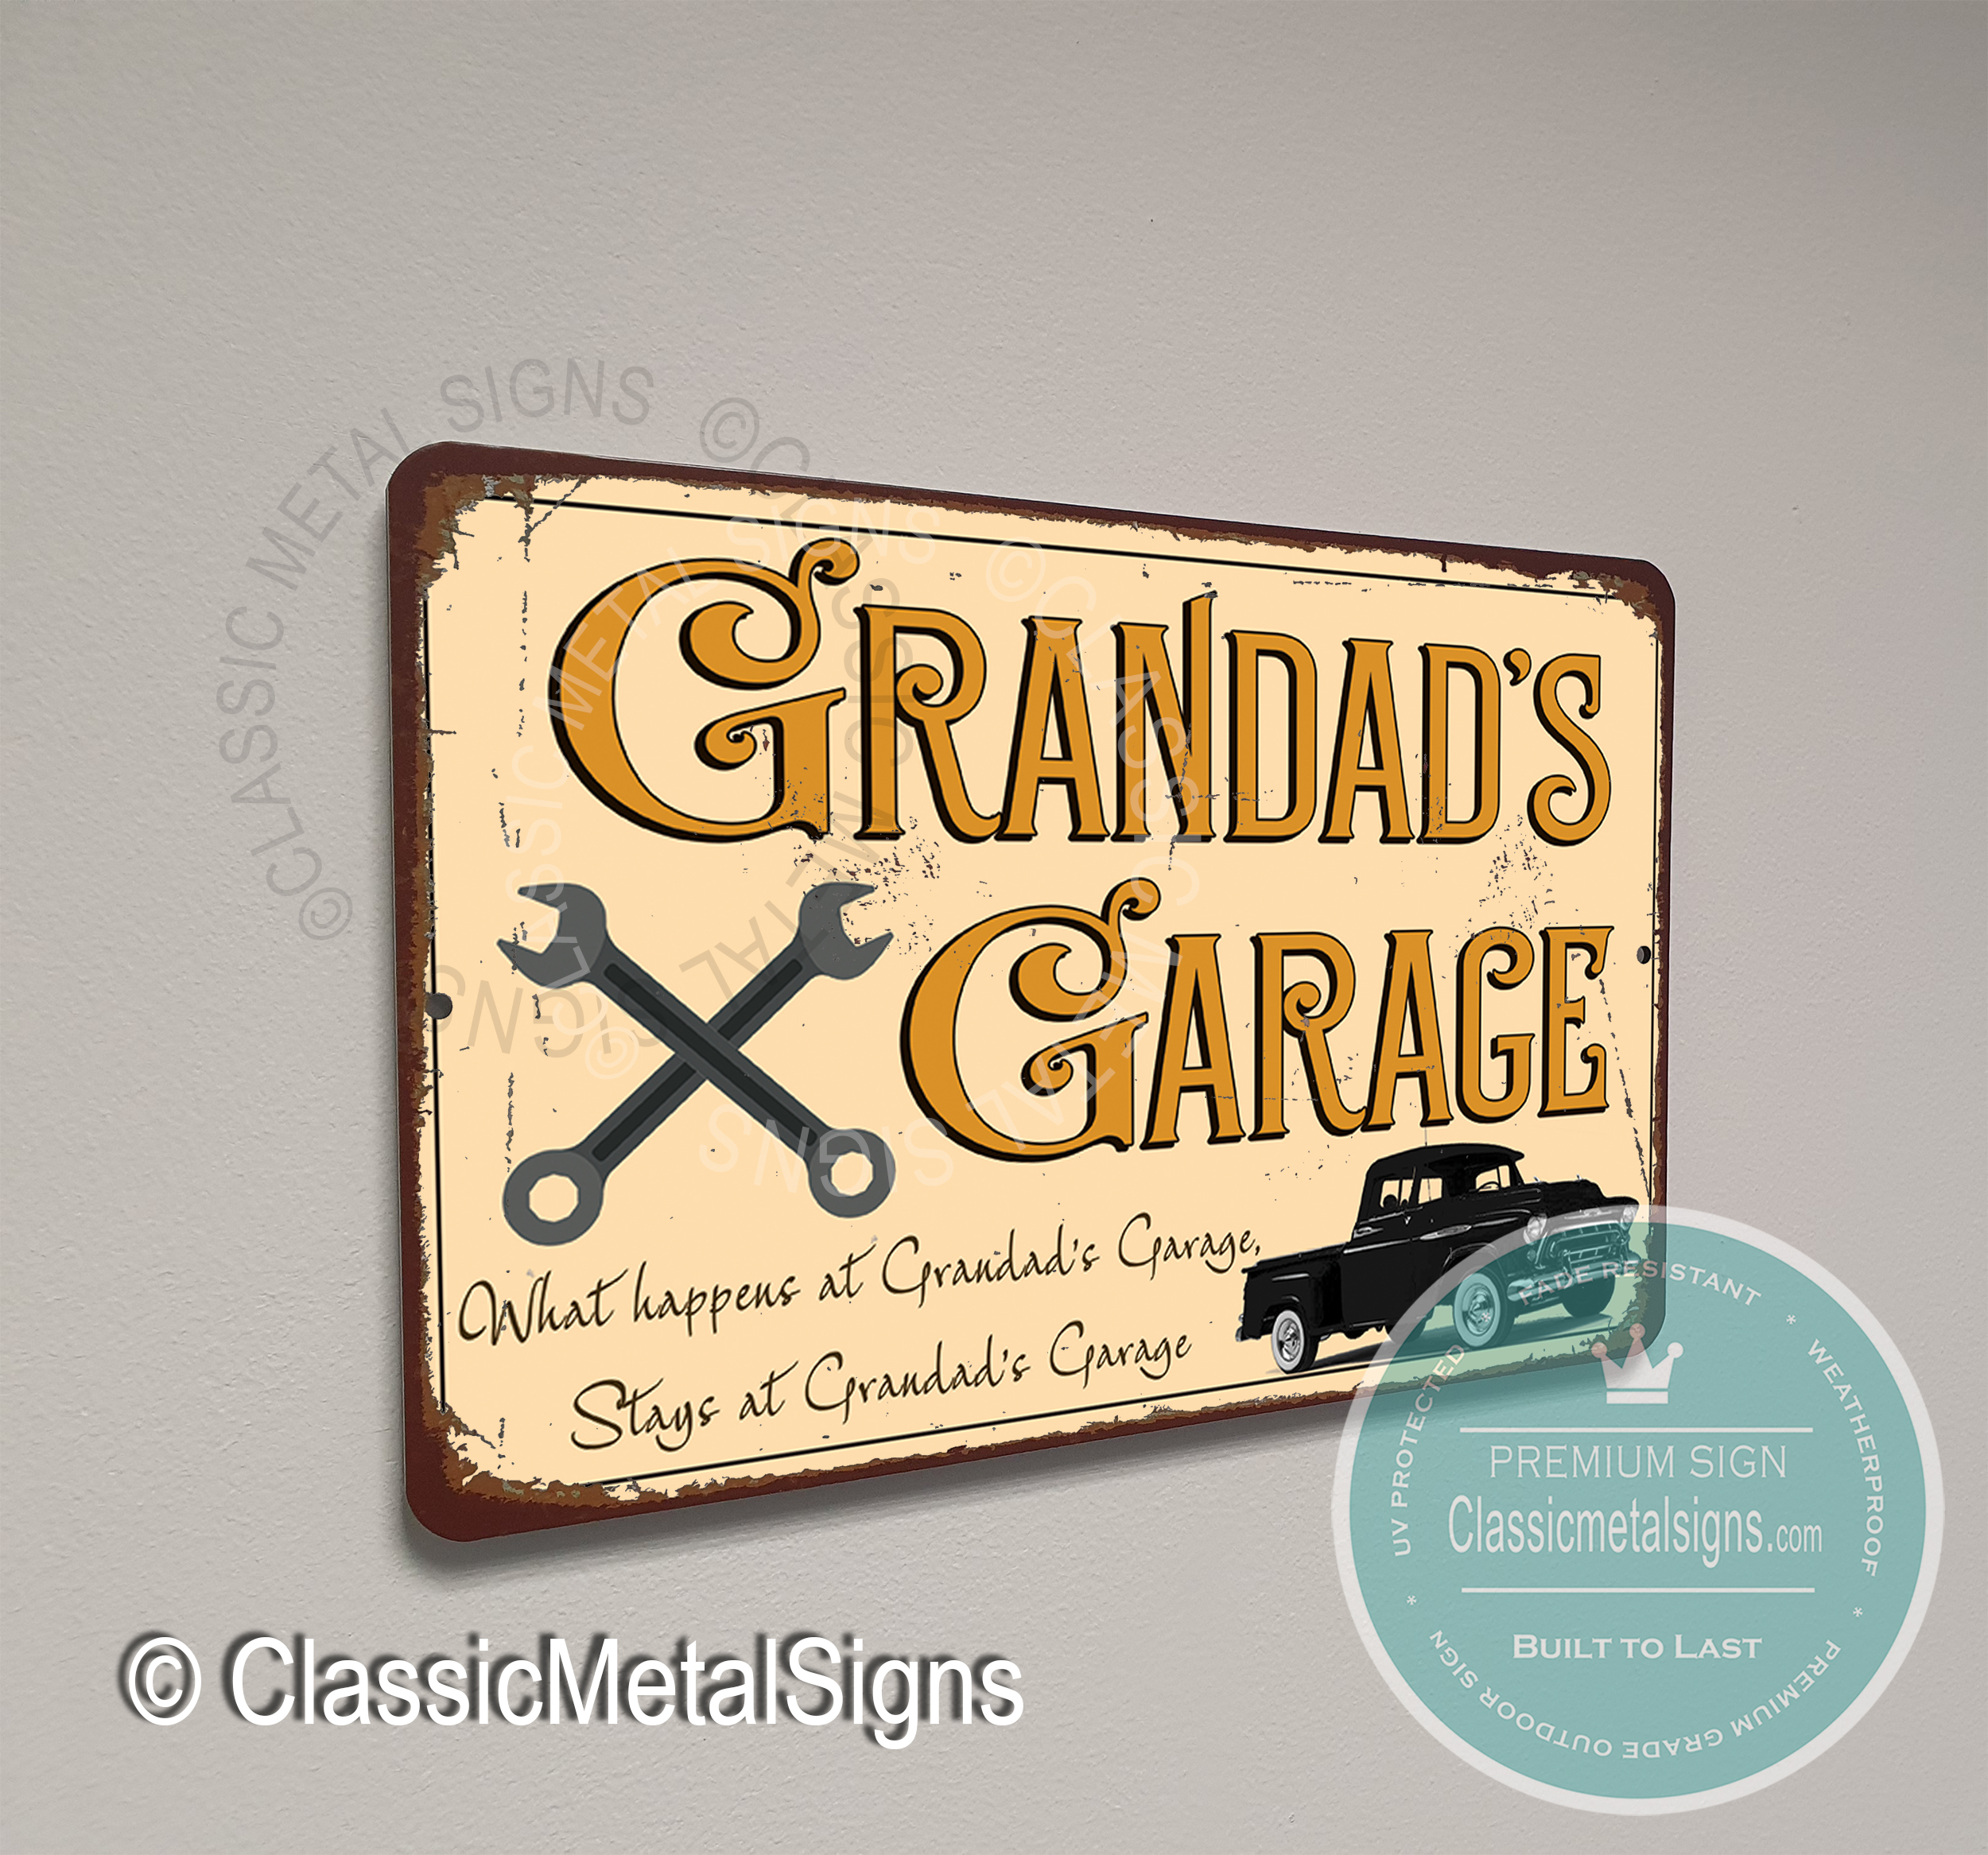 Grandad's Garage Signs